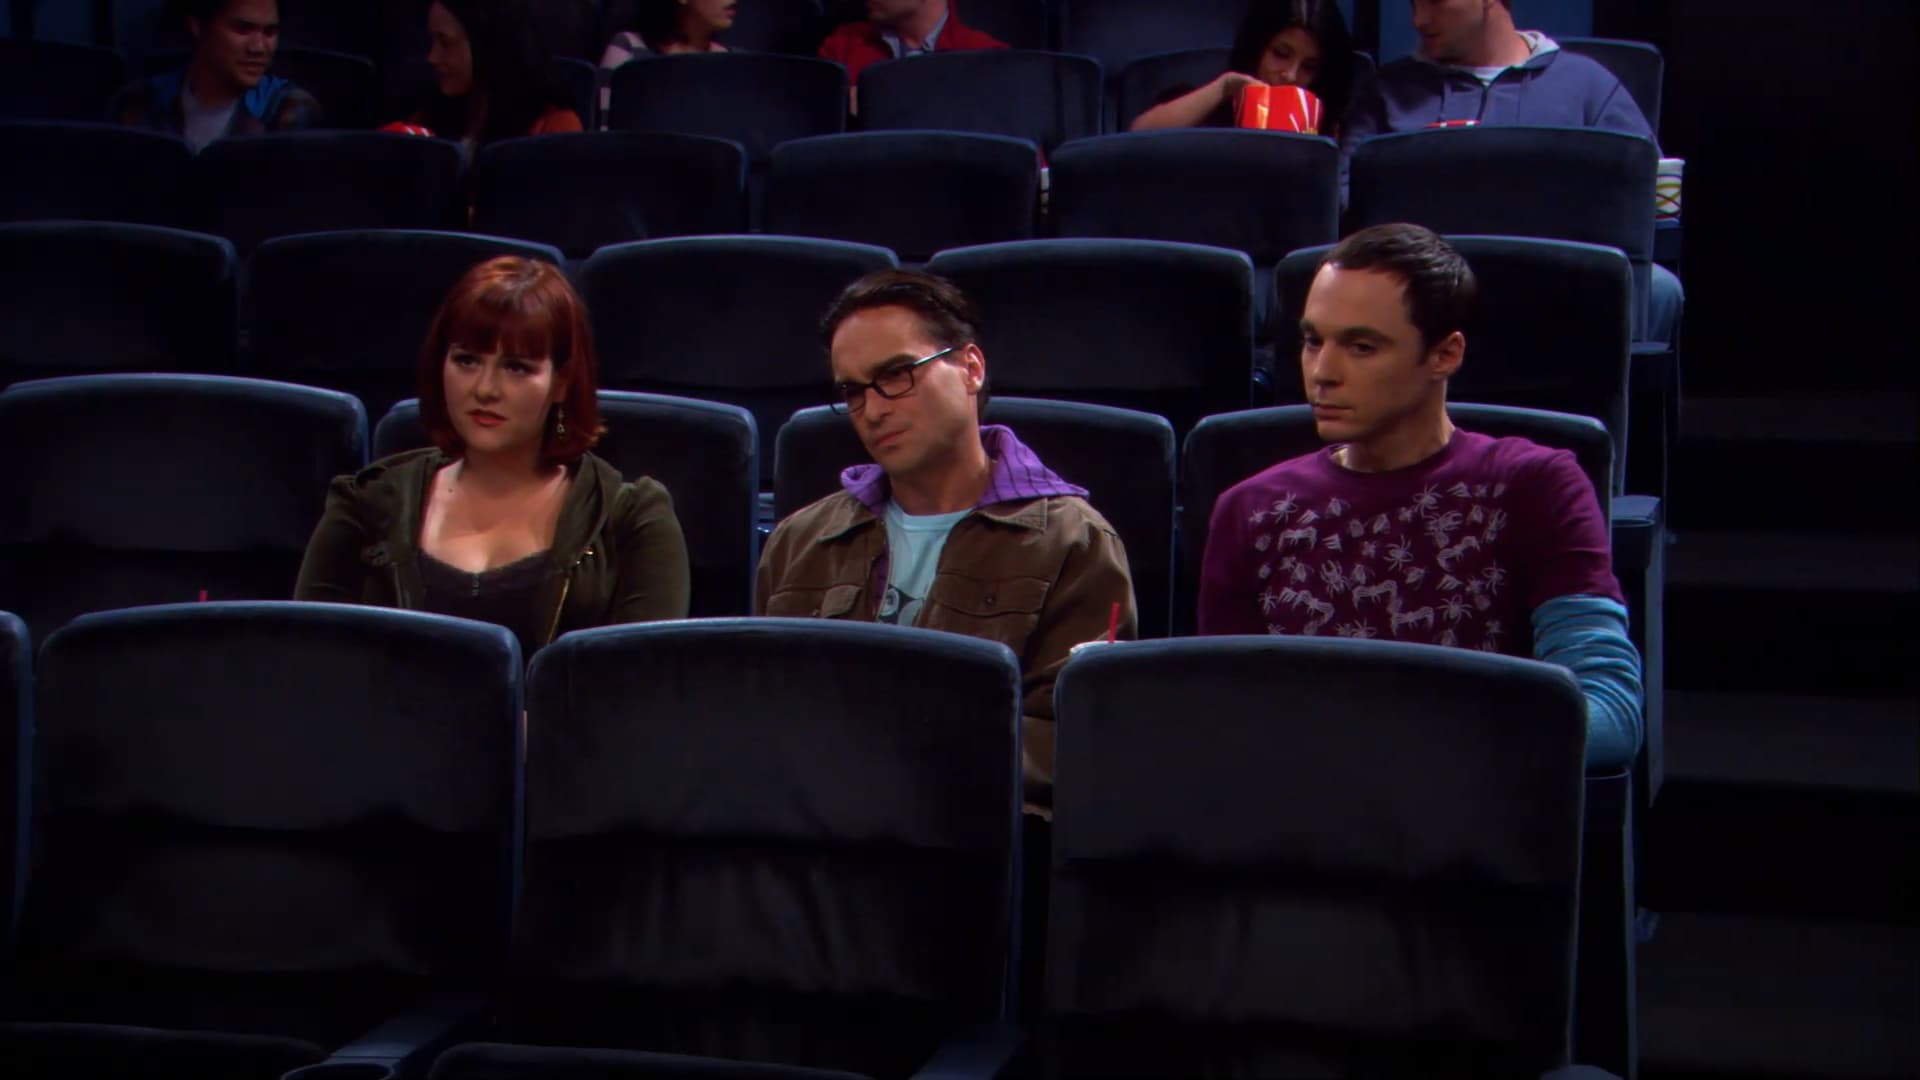 The Big Bang Theory: Episode 2 Season 9